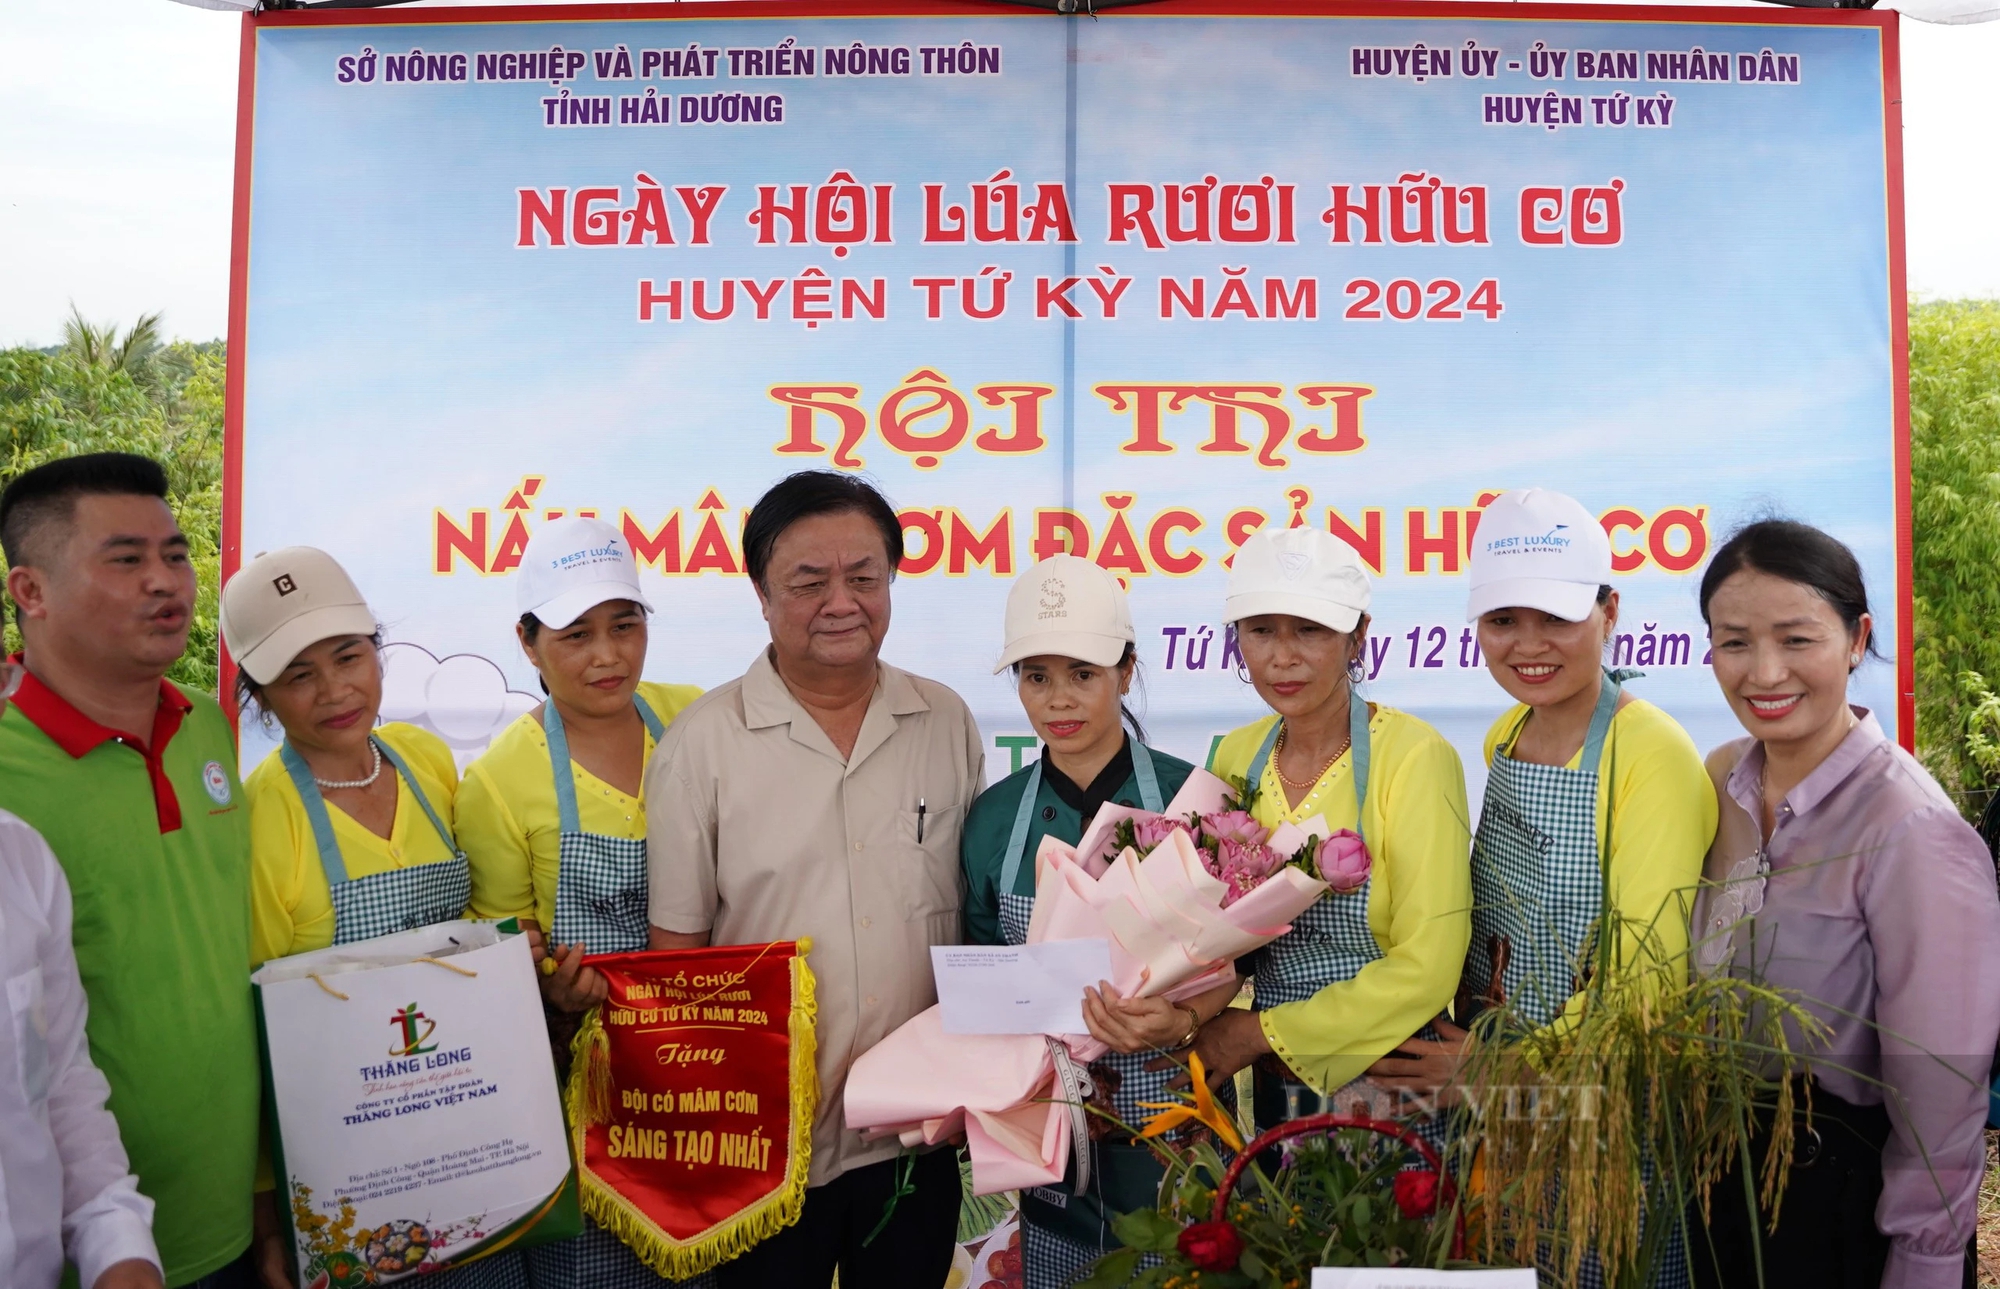 Một huyện của tỉnh Hải Dương, tổ chức ngày hội cho cây lúa, con rươi, Bộ trưởng Bộ NNPTNT đến tận nơi xem- Ảnh 11.